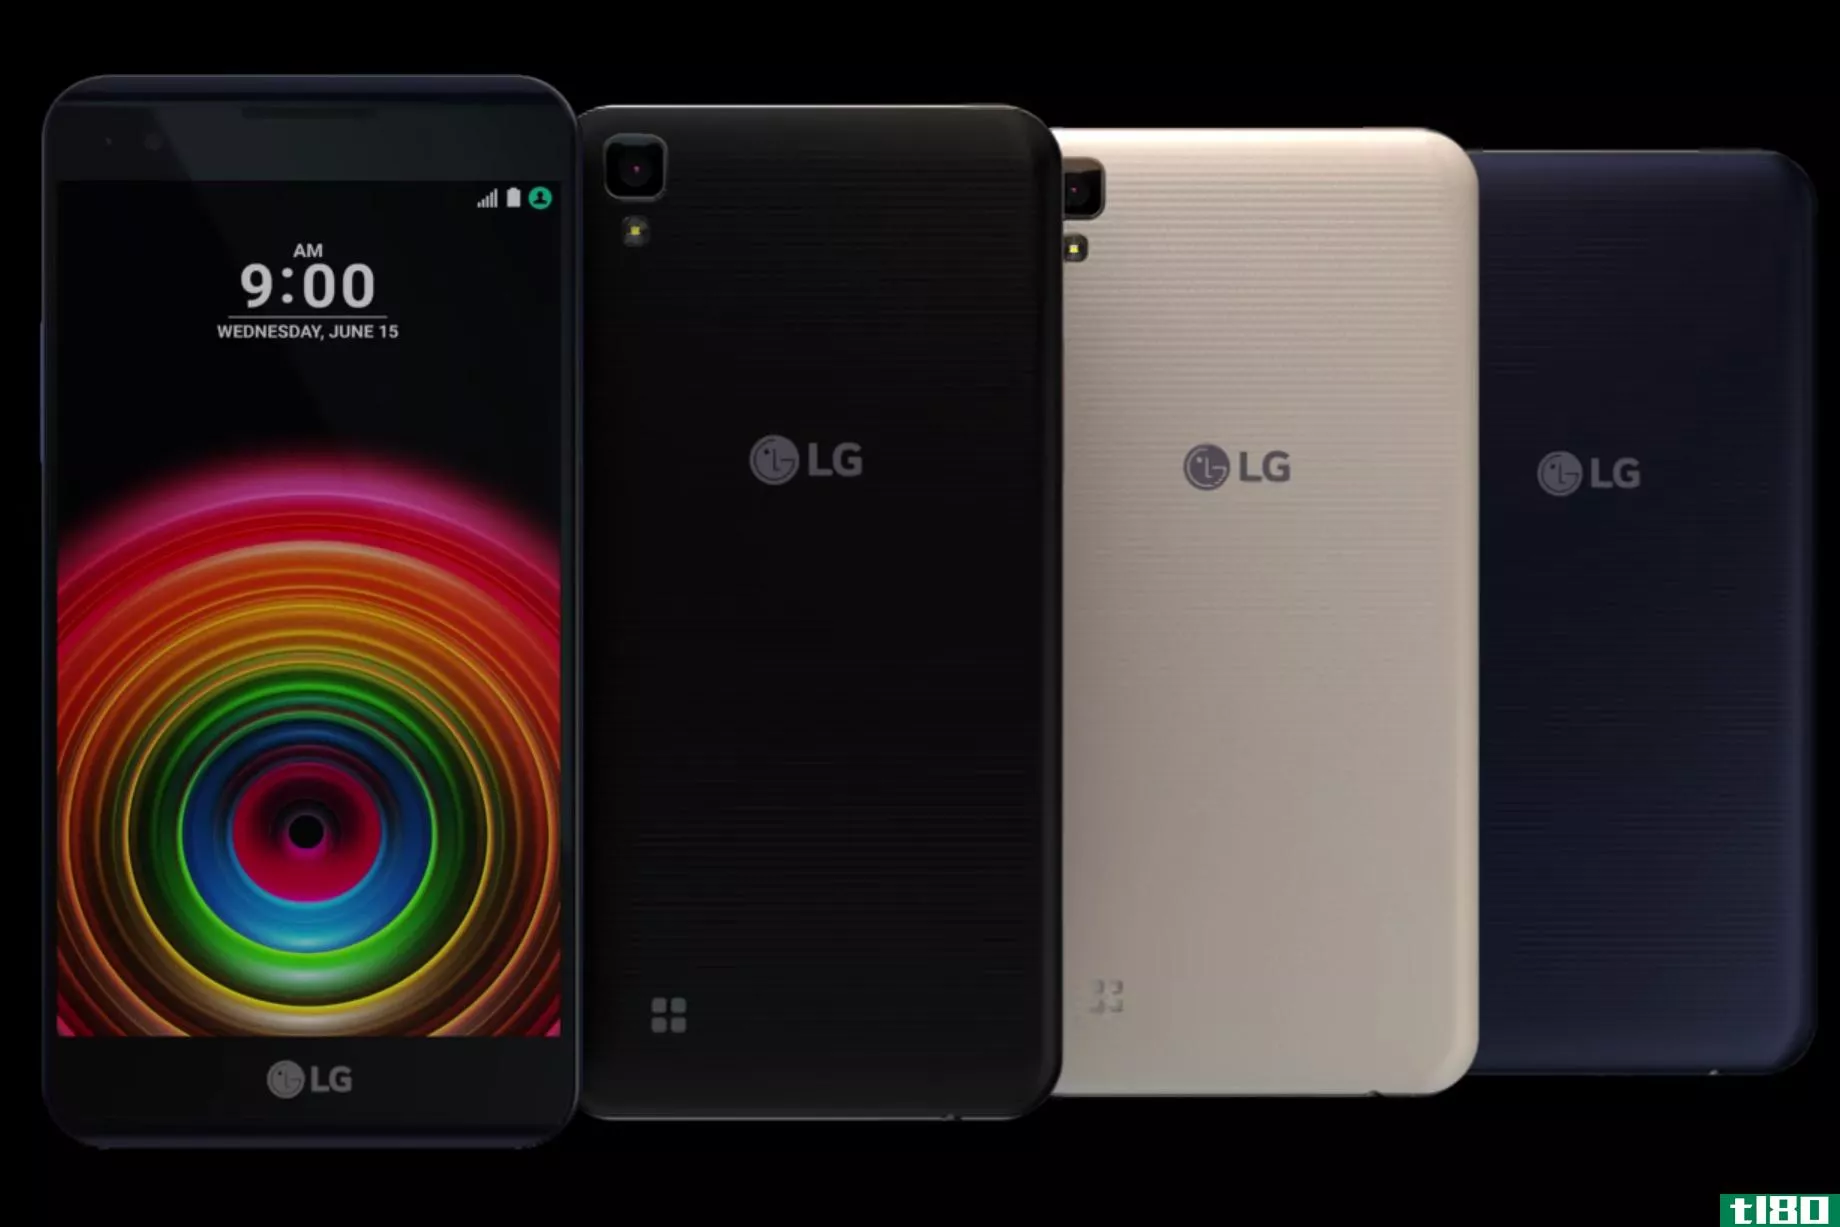 lg推出四款新的x系列智能手机